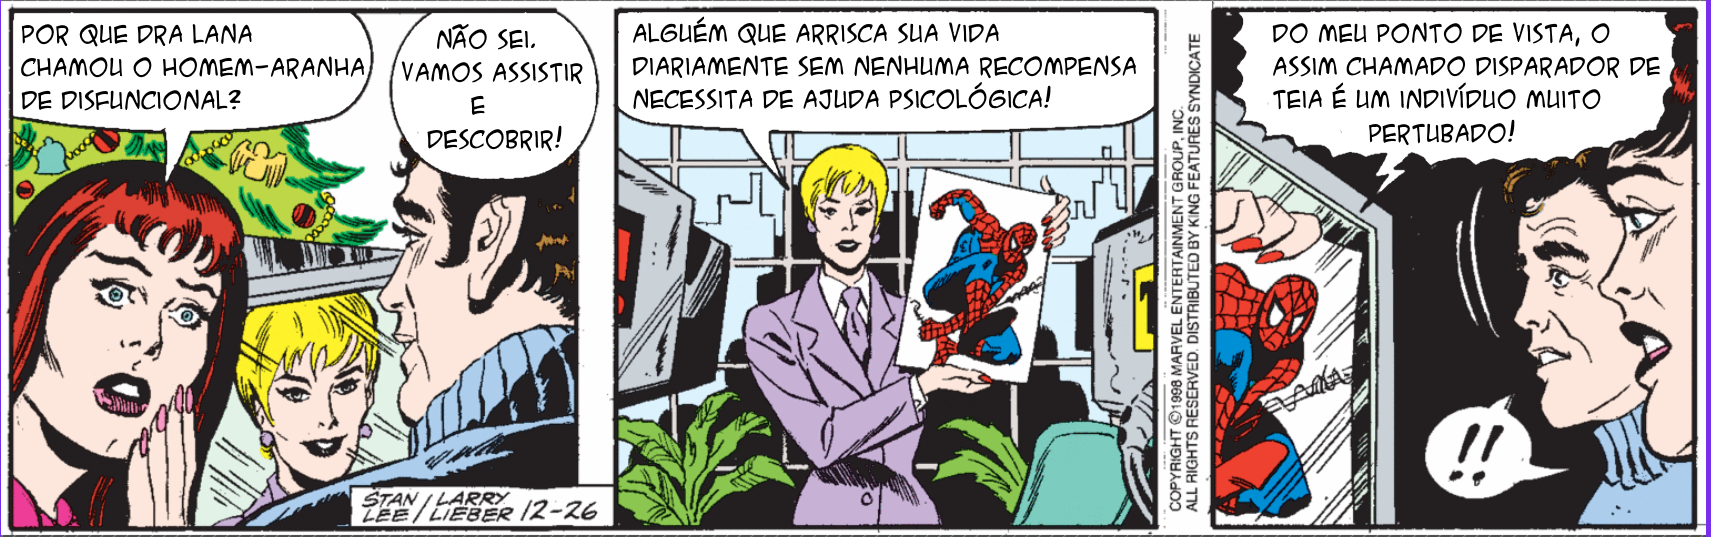 Homem-Aranha - Página 2 6